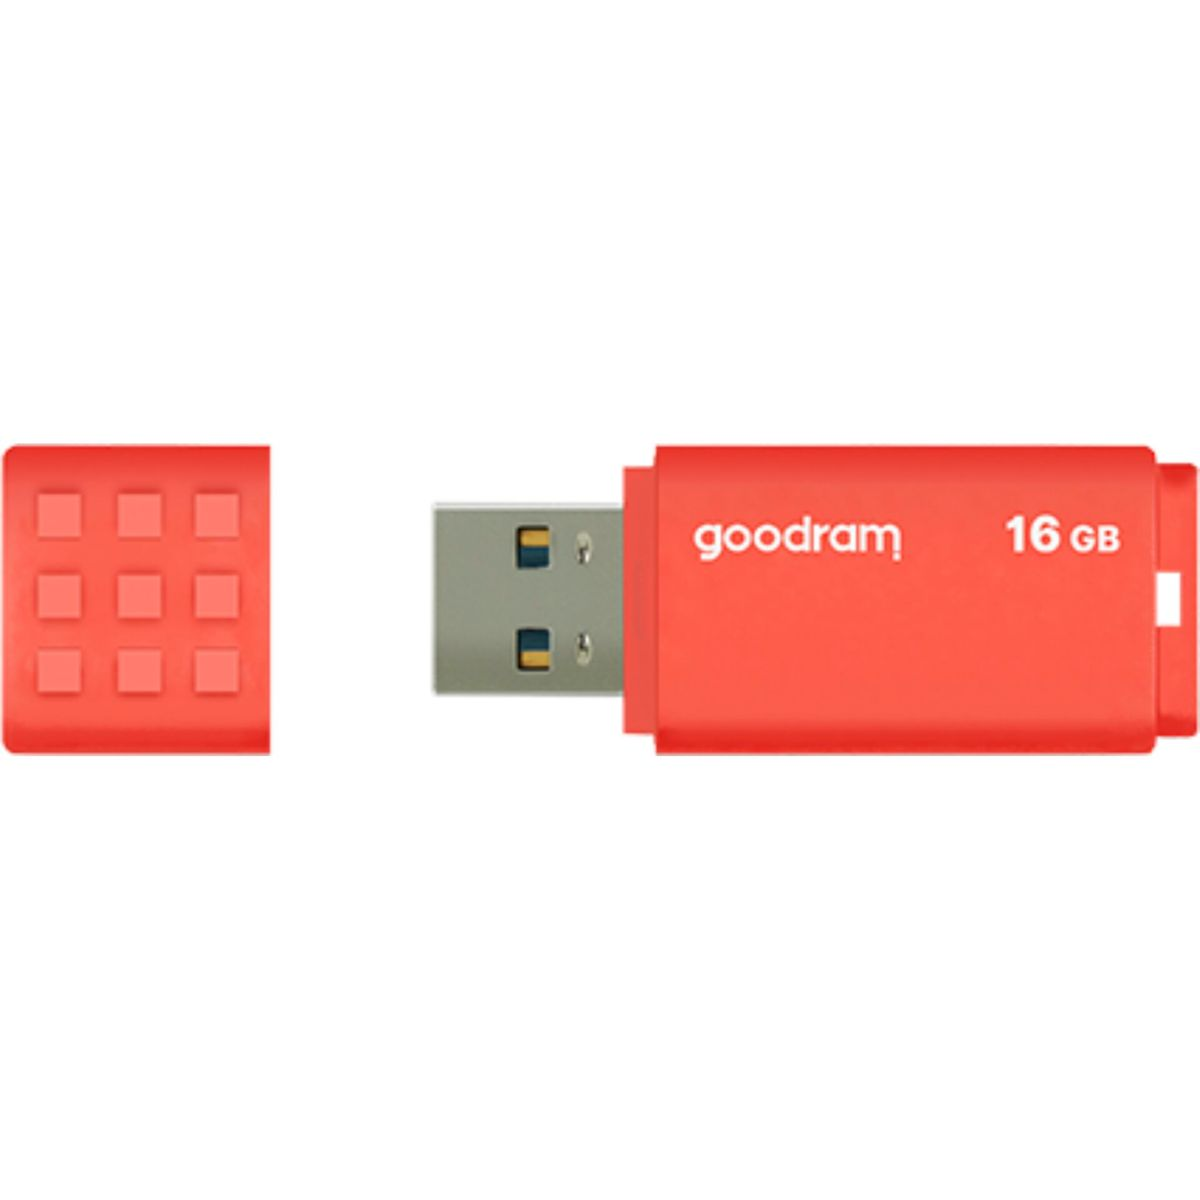 GOODRAM UME3 USB 16GB 16 USB (orange, GB) 3.0 Orange Stick